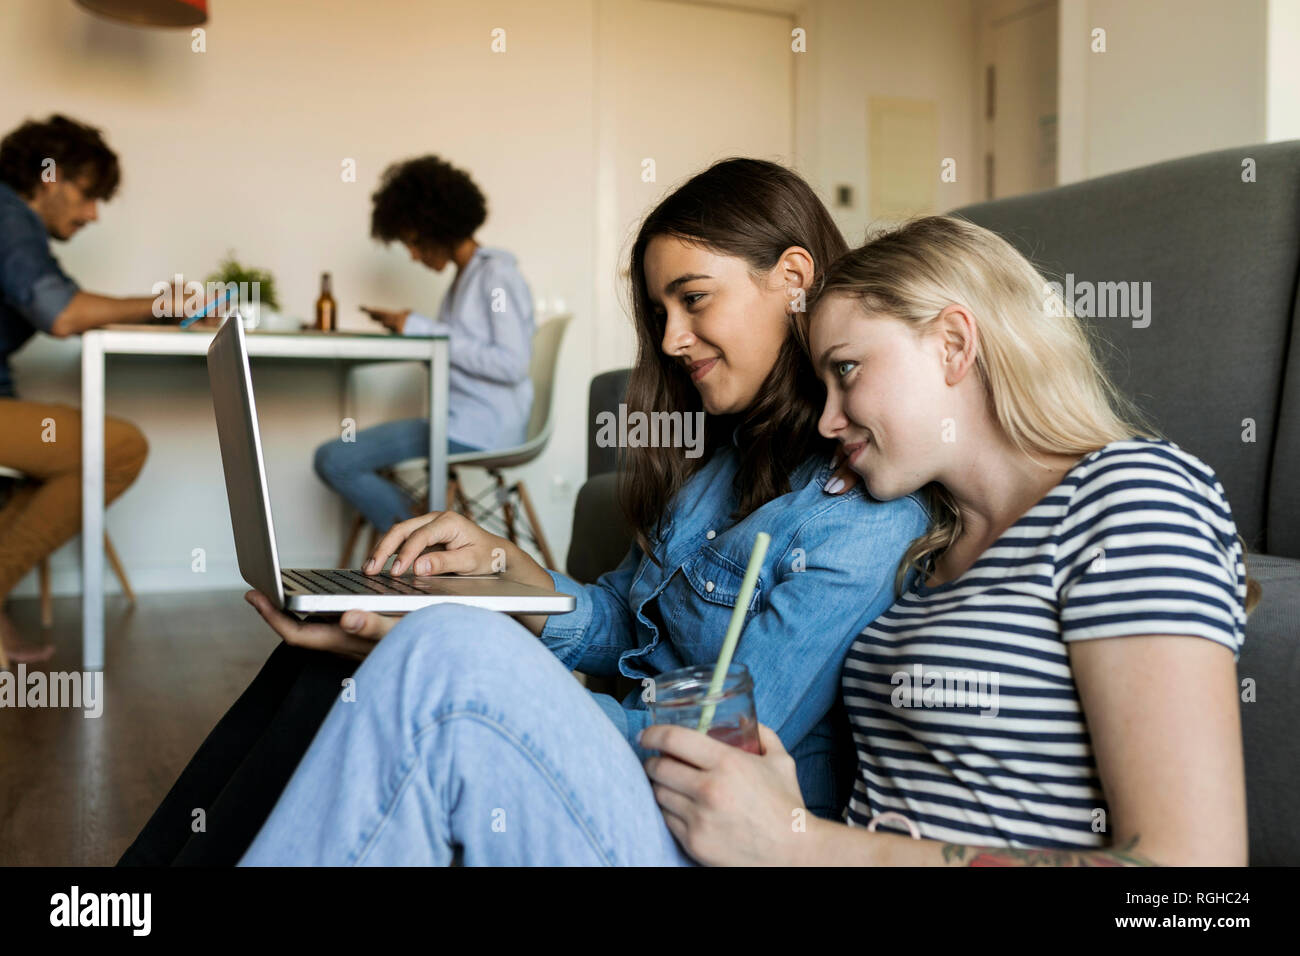 Deux jeunes femmes smiling sitting on floor with laptop partage en arrière-plan Banque D'Images